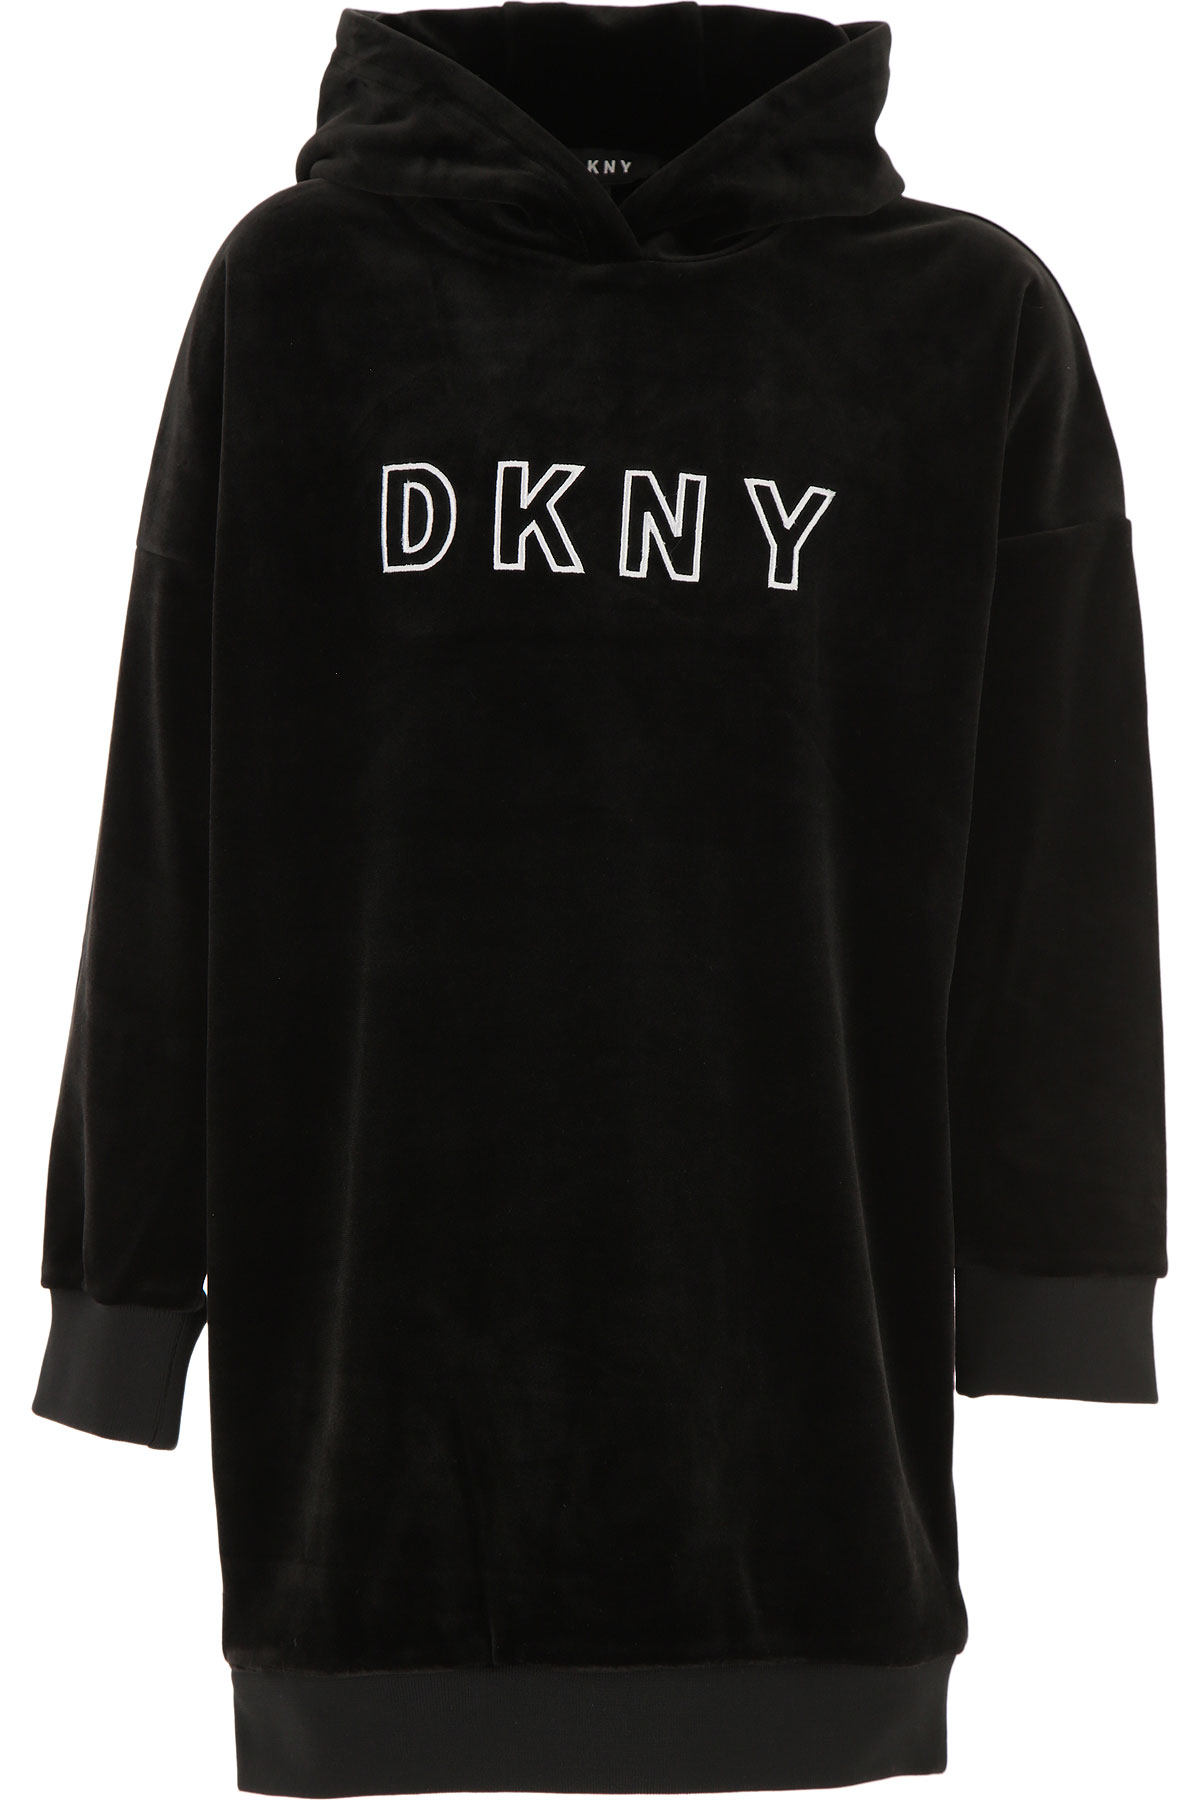 DKNY Kleid für Mädchen Günstig im Sale, Schwarz, Polyester, 2017, 10Y 12Y 2Y 4Y 6Y 8Y